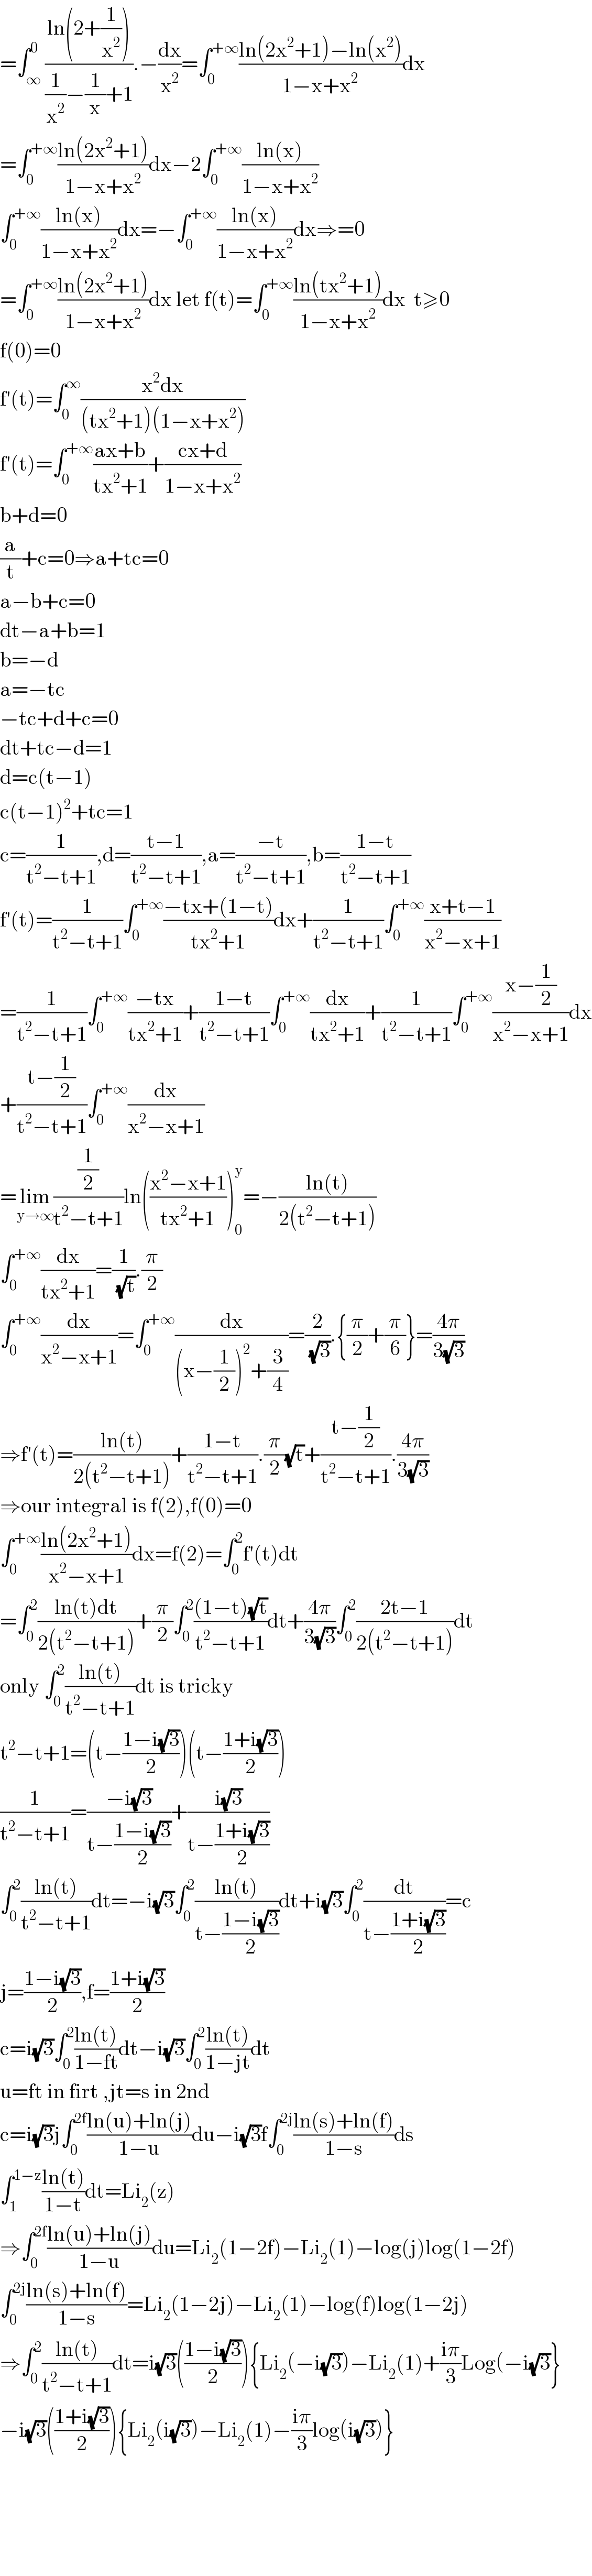 =∫_∞ ^0 ((ln(2+(1/x^2 )))/((1/x^2 )−(1/x)+1)).−(dx/x^2 )=∫_0 ^(+∞) ((ln(2x^2 +1)−ln(x^2 ))/(1−x+x^2 ))dx  =∫_0 ^(+∞) ((ln(2x^2 +1))/(1−x+x^2 ))dx−2∫_0 ^(+∞) ((ln(x))/(1−x+x^2 ))  ∫_0 ^(+∞) ((ln(x))/(1−x+x^2 ))dx=−∫_0 ^(+∞) ((ln(x))/(1−x+x^2 ))dx⇒=0  =∫_0 ^(+∞) ((ln(2x^2 +1))/(1−x+x^2 ))dx let f(t)=∫_0 ^(+∞) ((ln(tx^2 +1))/(1−x+x^2 ))dx  t≥0  f(0)=0  f′(t)=∫_0 ^∞ ((x^2 dx)/((tx^2 +1)(1−x+x^2 )))   f′(t)=∫_0 ^(+∞) ((ax+b)/(tx^2 +1))+((cx+d)/(1−x+x^2 ))  b+d=0  (a/t)+c=0⇒a+tc=0  a−b+c=0  dt−a+b=1  b=−d  a=−tc  −tc+d+c=0  dt+tc−d=1  d=c(t−1)  c(t−1)^2 +tc=1  c=(1/(t^2 −t+1)),d=((t−1)/(t^2 −t+1)),a=((−t)/(t^2 −t+1)),b=((1−t)/(t^2 −t+1))  f′(t)=(1/(t^2 −t+1))∫_0 ^(+∞) ((−tx+(1−t))/(tx^2 +1))dx+(1/(t^2 −t+1))∫_0 ^(+∞) ((x+t−1)/(x^2 −x+1))  =(1/(t^2 −t+1))∫_0 ^(+∞) ((−tx)/(tx^2 +1))+((1−t)/(t^2 −t+1))∫_0 ^(+∞) (dx/(tx^2 +1))+(1/(t^2 −t+1))∫_0 ^(+∞) ((x−(1/2))/(x^2 −x+1))dx  +((t−(1/2))/(t^2 −t+1))∫_0 ^(+∞) (dx/(x^2 −x+1))  =lim_(y→∞) ((1/2)/(t^2 −t+1))ln(((x^2 −x+1)/(tx^2 +1)))_0 ^y =−((ln(t))/(2(t^2 −t+1)))  ∫_0 ^(+∞) (dx/(tx^2 +1))=(1/(√t)).(π/2)  ∫_0 ^(+∞) (dx/(x^2 −x+1))=∫_0 ^(+∞) (dx/((x−(1/2))^2 +(3/4)))=(2/(√3)).{(π/2)+(π/6)}=((4π)/(3(√3)))  ⇒f′(t)=((ln(t))/(2(t^2 −t+1)))+((1−t)/(t^2 −t+1)).(π/2)(√t)+((t−(1/2))/(t^2 −t+1)).((4π)/(3(√3)))  ⇒our integral is f(2),f(0)=0  ∫_0 ^(+∞) ((ln(2x^2 +1))/(x^2 −x+1))dx=f(2)=∫_0 ^2 f′(t)dt  =∫_0 ^2 ((ln(t)dt)/(2(t^2 −t+1)))+(π/2)∫_0 ^2 (((1−t)(√t))/(t^2 −t+1))dt+((4π)/(3(√3)))∫_0 ^2 ((2t−1)/(2(t^2 −t+1)))dt  only ∫_0 ^2 ((ln(t))/(t^2 −t+1))dt is tricky  t^2 −t+1=(t−((1−i(√3))/2))(t−((1+i(√3))/2))  (1/(t^2 −t+1))=((−i(√3))/(t−((1−i(√3))/2)))+((i(√3))/(t−((1+i(√3))/2)))  ∫_0 ^2 ((ln(t))/(t^2 −t+1))dt=−i(√3)∫_0 ^2 ((ln(t))/(t−((1−i(√3))/2)))dt+i(√3)∫_0 ^2 (dt/(t−((1+i(√3))/2)))=c  j=((1−i(√3))/2),f=((1+i(√3))/2)  c=i(√3)∫_0 ^2 ((ln(t))/(1−ft))dt−i(√3)∫_0 ^2 ((ln(t))/(1−jt))dt  u=ft in firt ,jt=s in 2nd  c=i(√3)j∫_0 ^(2f) ((ln(u)+ln(j))/(1−u))du−i(√3)f∫_0 ^(2j) ((ln(s)+ln(f))/(1−s))ds  ∫_1 ^(1−z) ((ln(t))/(1−t))dt=Li_2 (z)  ⇒∫_0 ^(2f) ((ln(u)+ln(j))/(1−u))du=Li_2 (1−2f)−Li_2 (1)−log(j)log(1−2f)  ∫_0 ^(2j) ((ln(s)+ln(f))/(1−s))=Li_2 (1−2j)−Li_2 (1)−log(f)log(1−2j)  ⇒∫_0 ^2 ((ln(t))/(t^2 −t+1))dt=i(√3)(((1−i(√3))/2)){Li_2 (−i(√3))−Li_2 (1)+((iπ)/3)Log(−i(√3)}  −i(√3)(((1+i(√3))/2)){Li_2 (i(√3))−Li_2 (1)−((iπ)/3)log(i(√3))}          